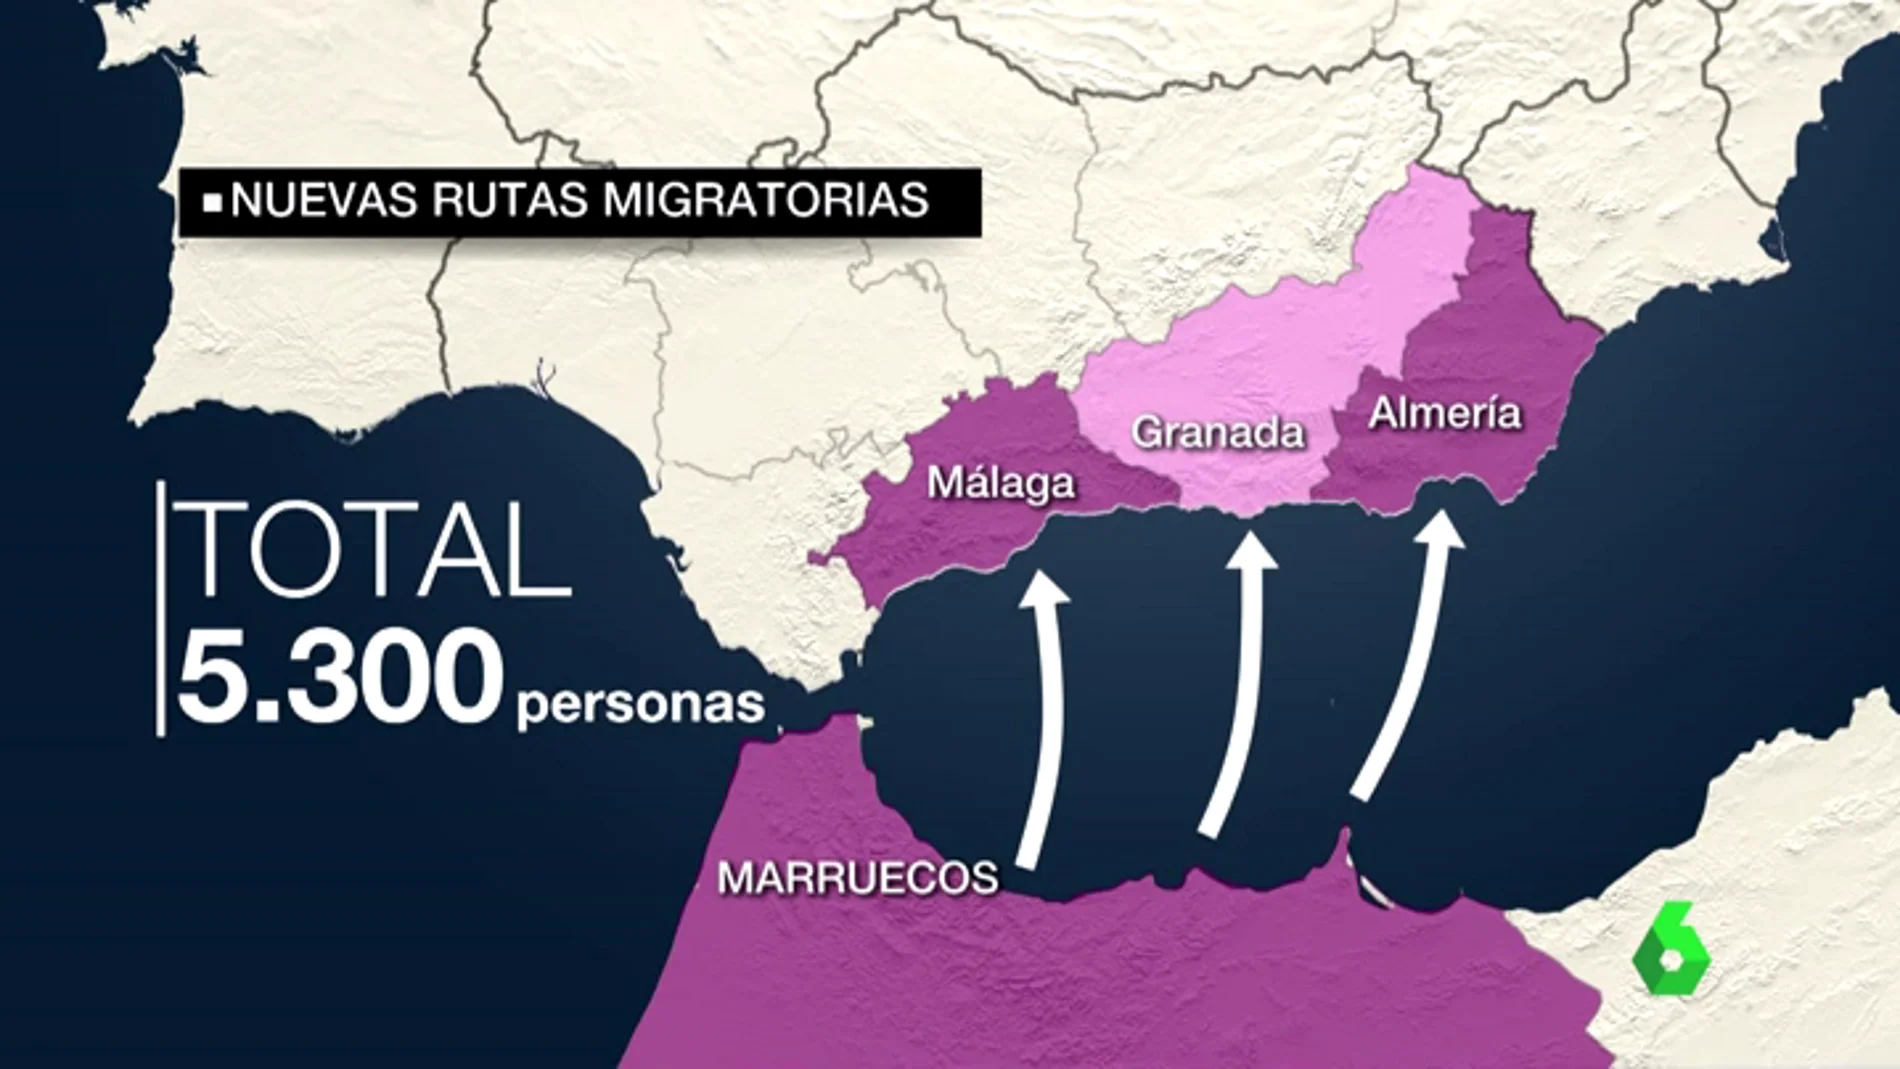 Las costas se convierten en el paso más común de los migrantes para atravesar la frontera de España 